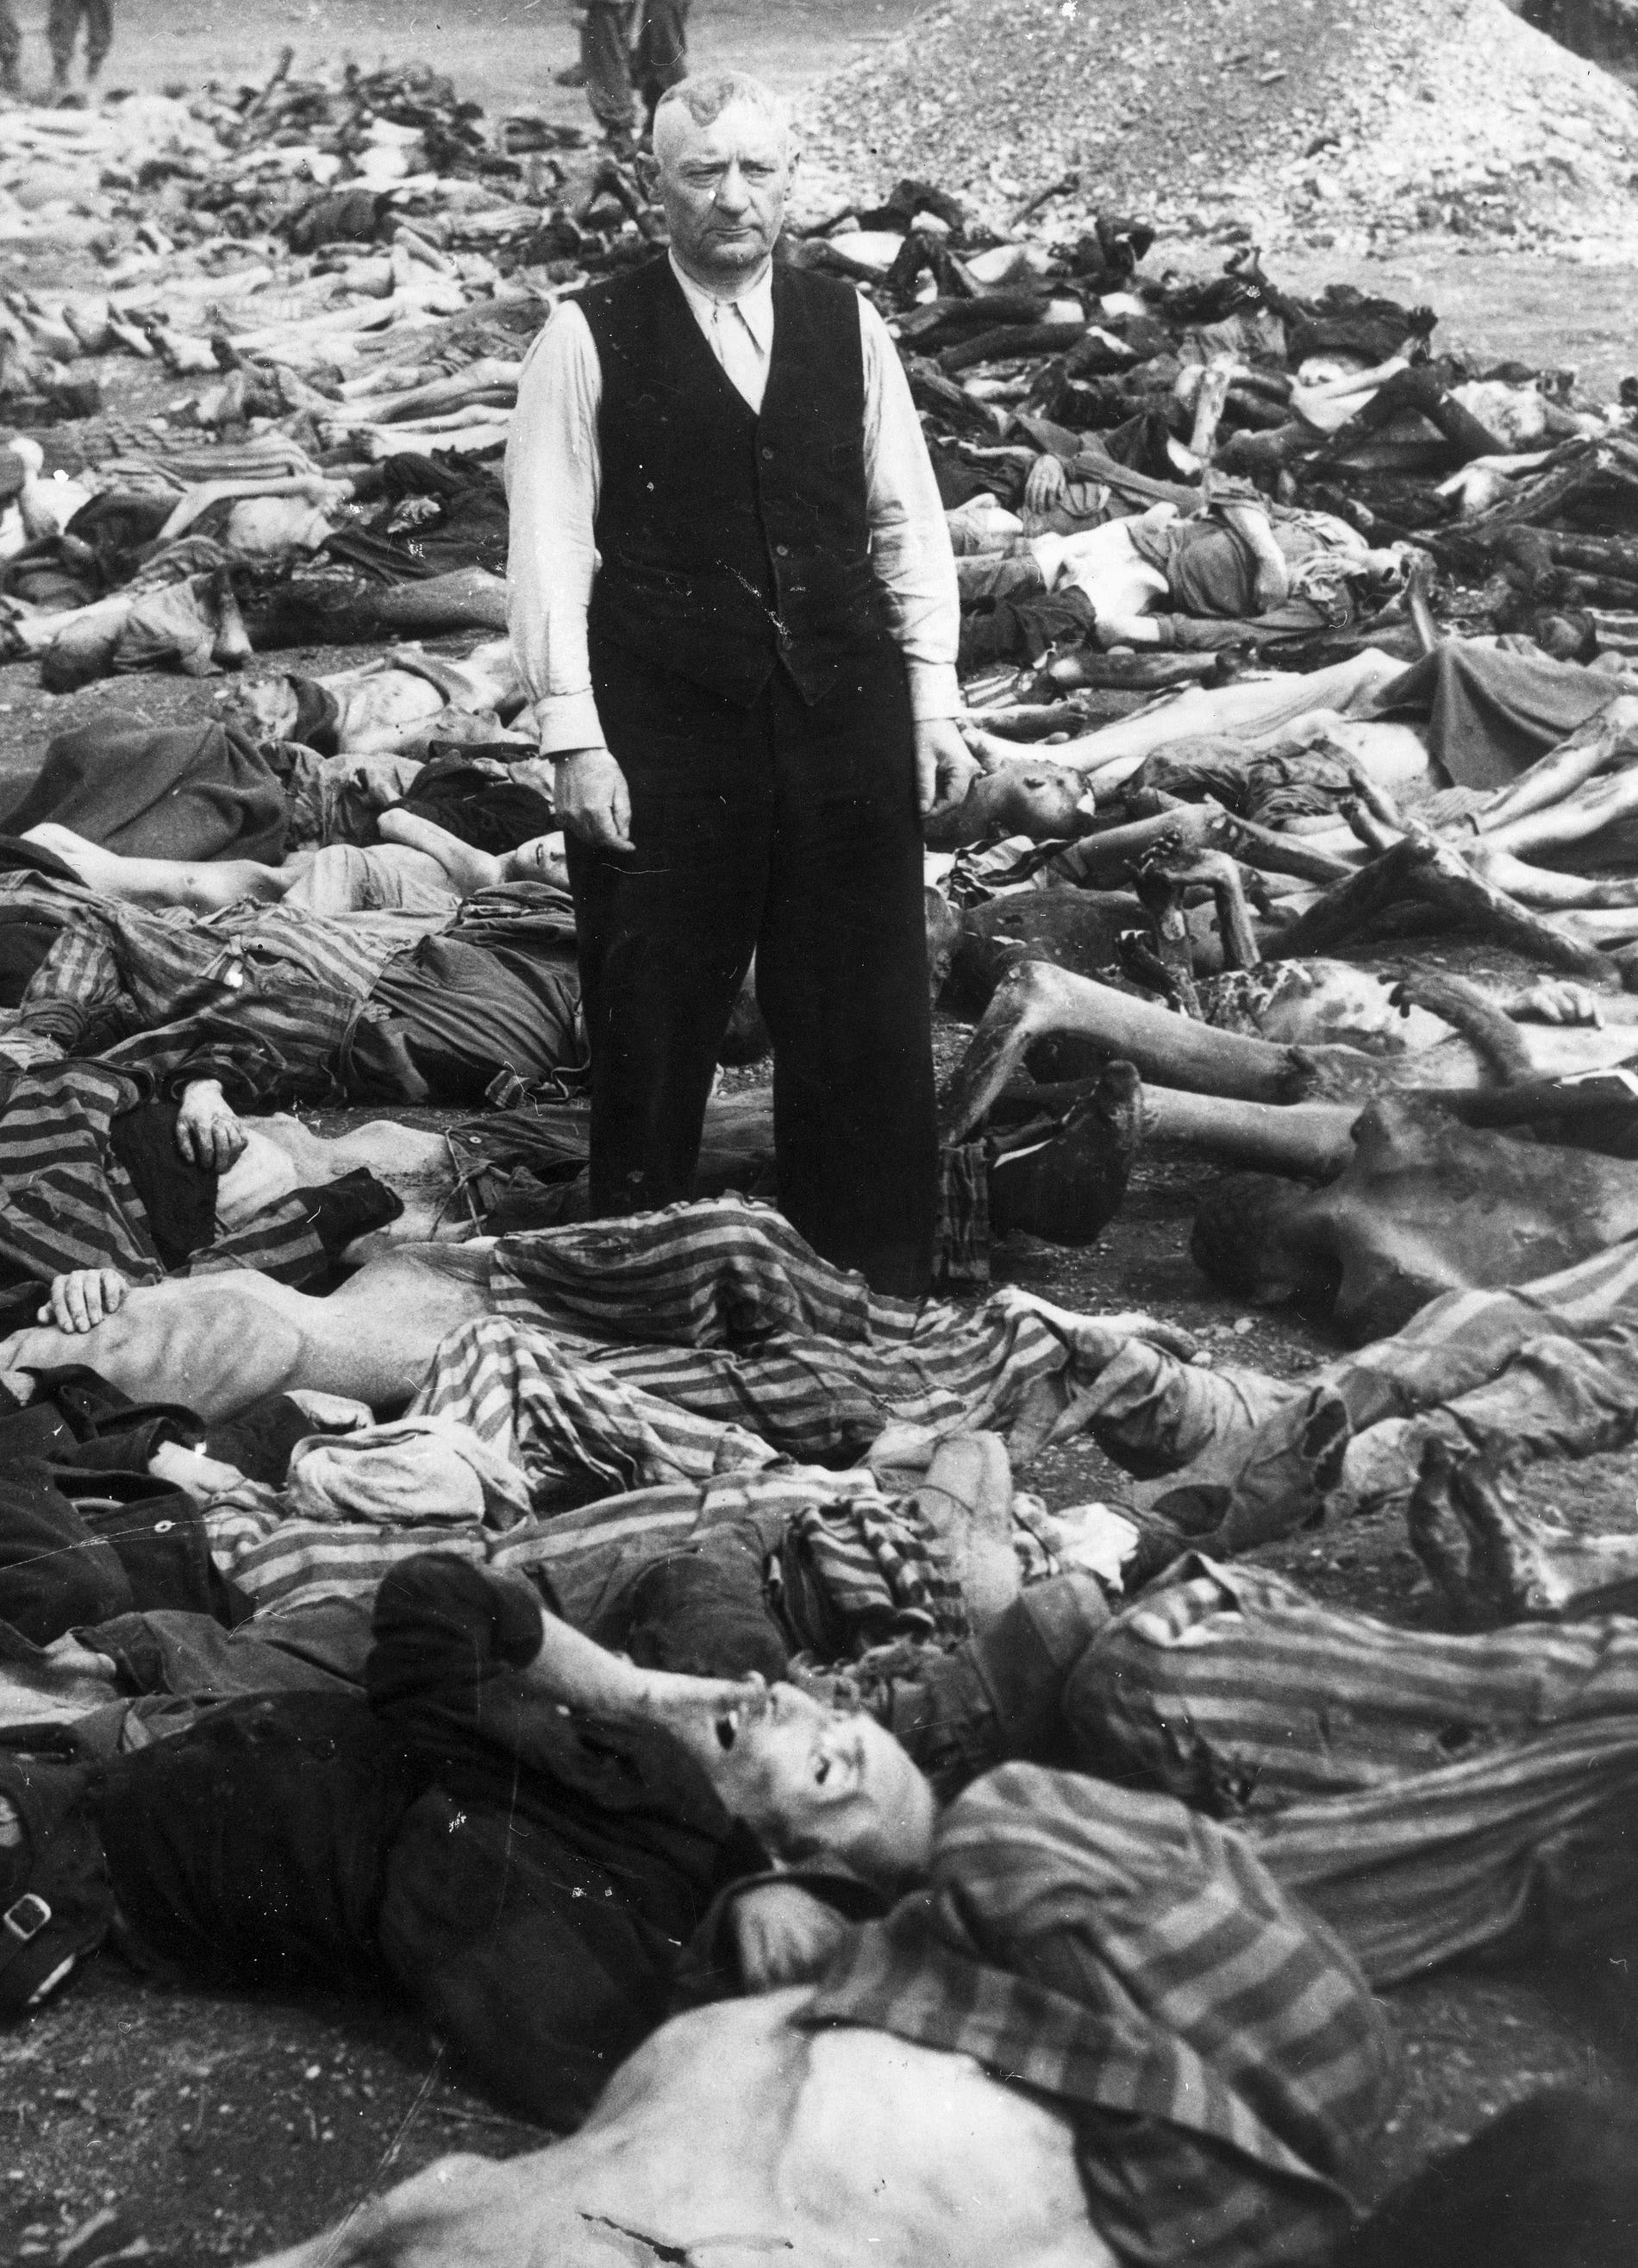 Efter Hitlers maktövertagande 1933 började man systematiskt förfölja judarna i Tyskland. På Wannseekonferensen 1942 beslutade man om 'den slutglitiga lösningen på judefrågan', de skulle utrotas. Antalet offer för Förintelsen uppskattas till omkring 6 miljoner. De flesta gasades ihjäl och kremerades i koncentrationsläger. Januari 1944.